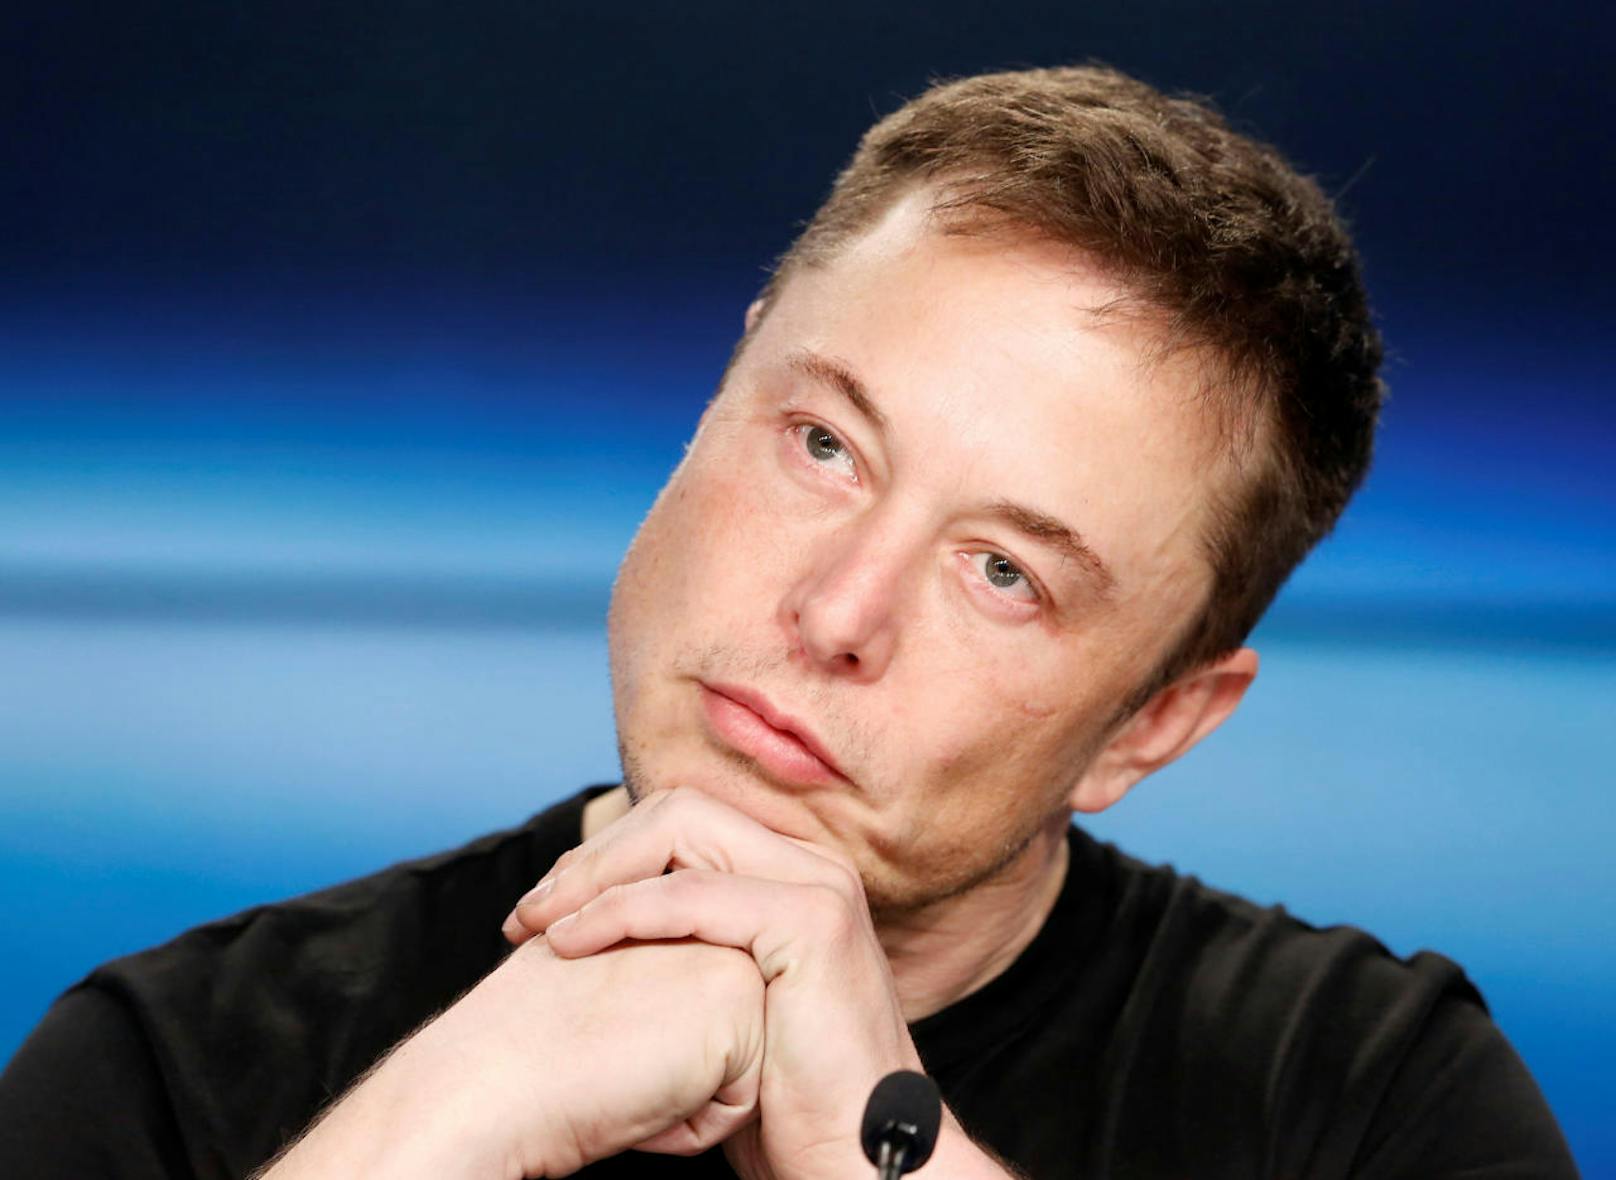 <b>26. November 2018:</b> Elon Musk sieht eine 70-prozentige Chance, dass er auf den Mars fliegen wird. Das hat der Tesla-CEO und SpaceX-Gründer kürzlich in der Sendung "Axios" auf HBO bekannt gegeben. Nicht nur das: Musk ist - anders als fast alle namhaften Experten - überzeugt, dass die Expedition bereits in den nächsten sieben Jahren stattfinden kann. Er wisse, dass das Risiko groß sei; trotzdem wolle er auf dem Mars ununterbrochen am Bau einer Basis arbeiten. Follower wie Hater haben diese Aussagen kritisch aufgenommen. Musk war zuletzt unter anderem wegen seiner Schlafprobleme und des öffentlichen Rauchens eines Joints in den Medien.